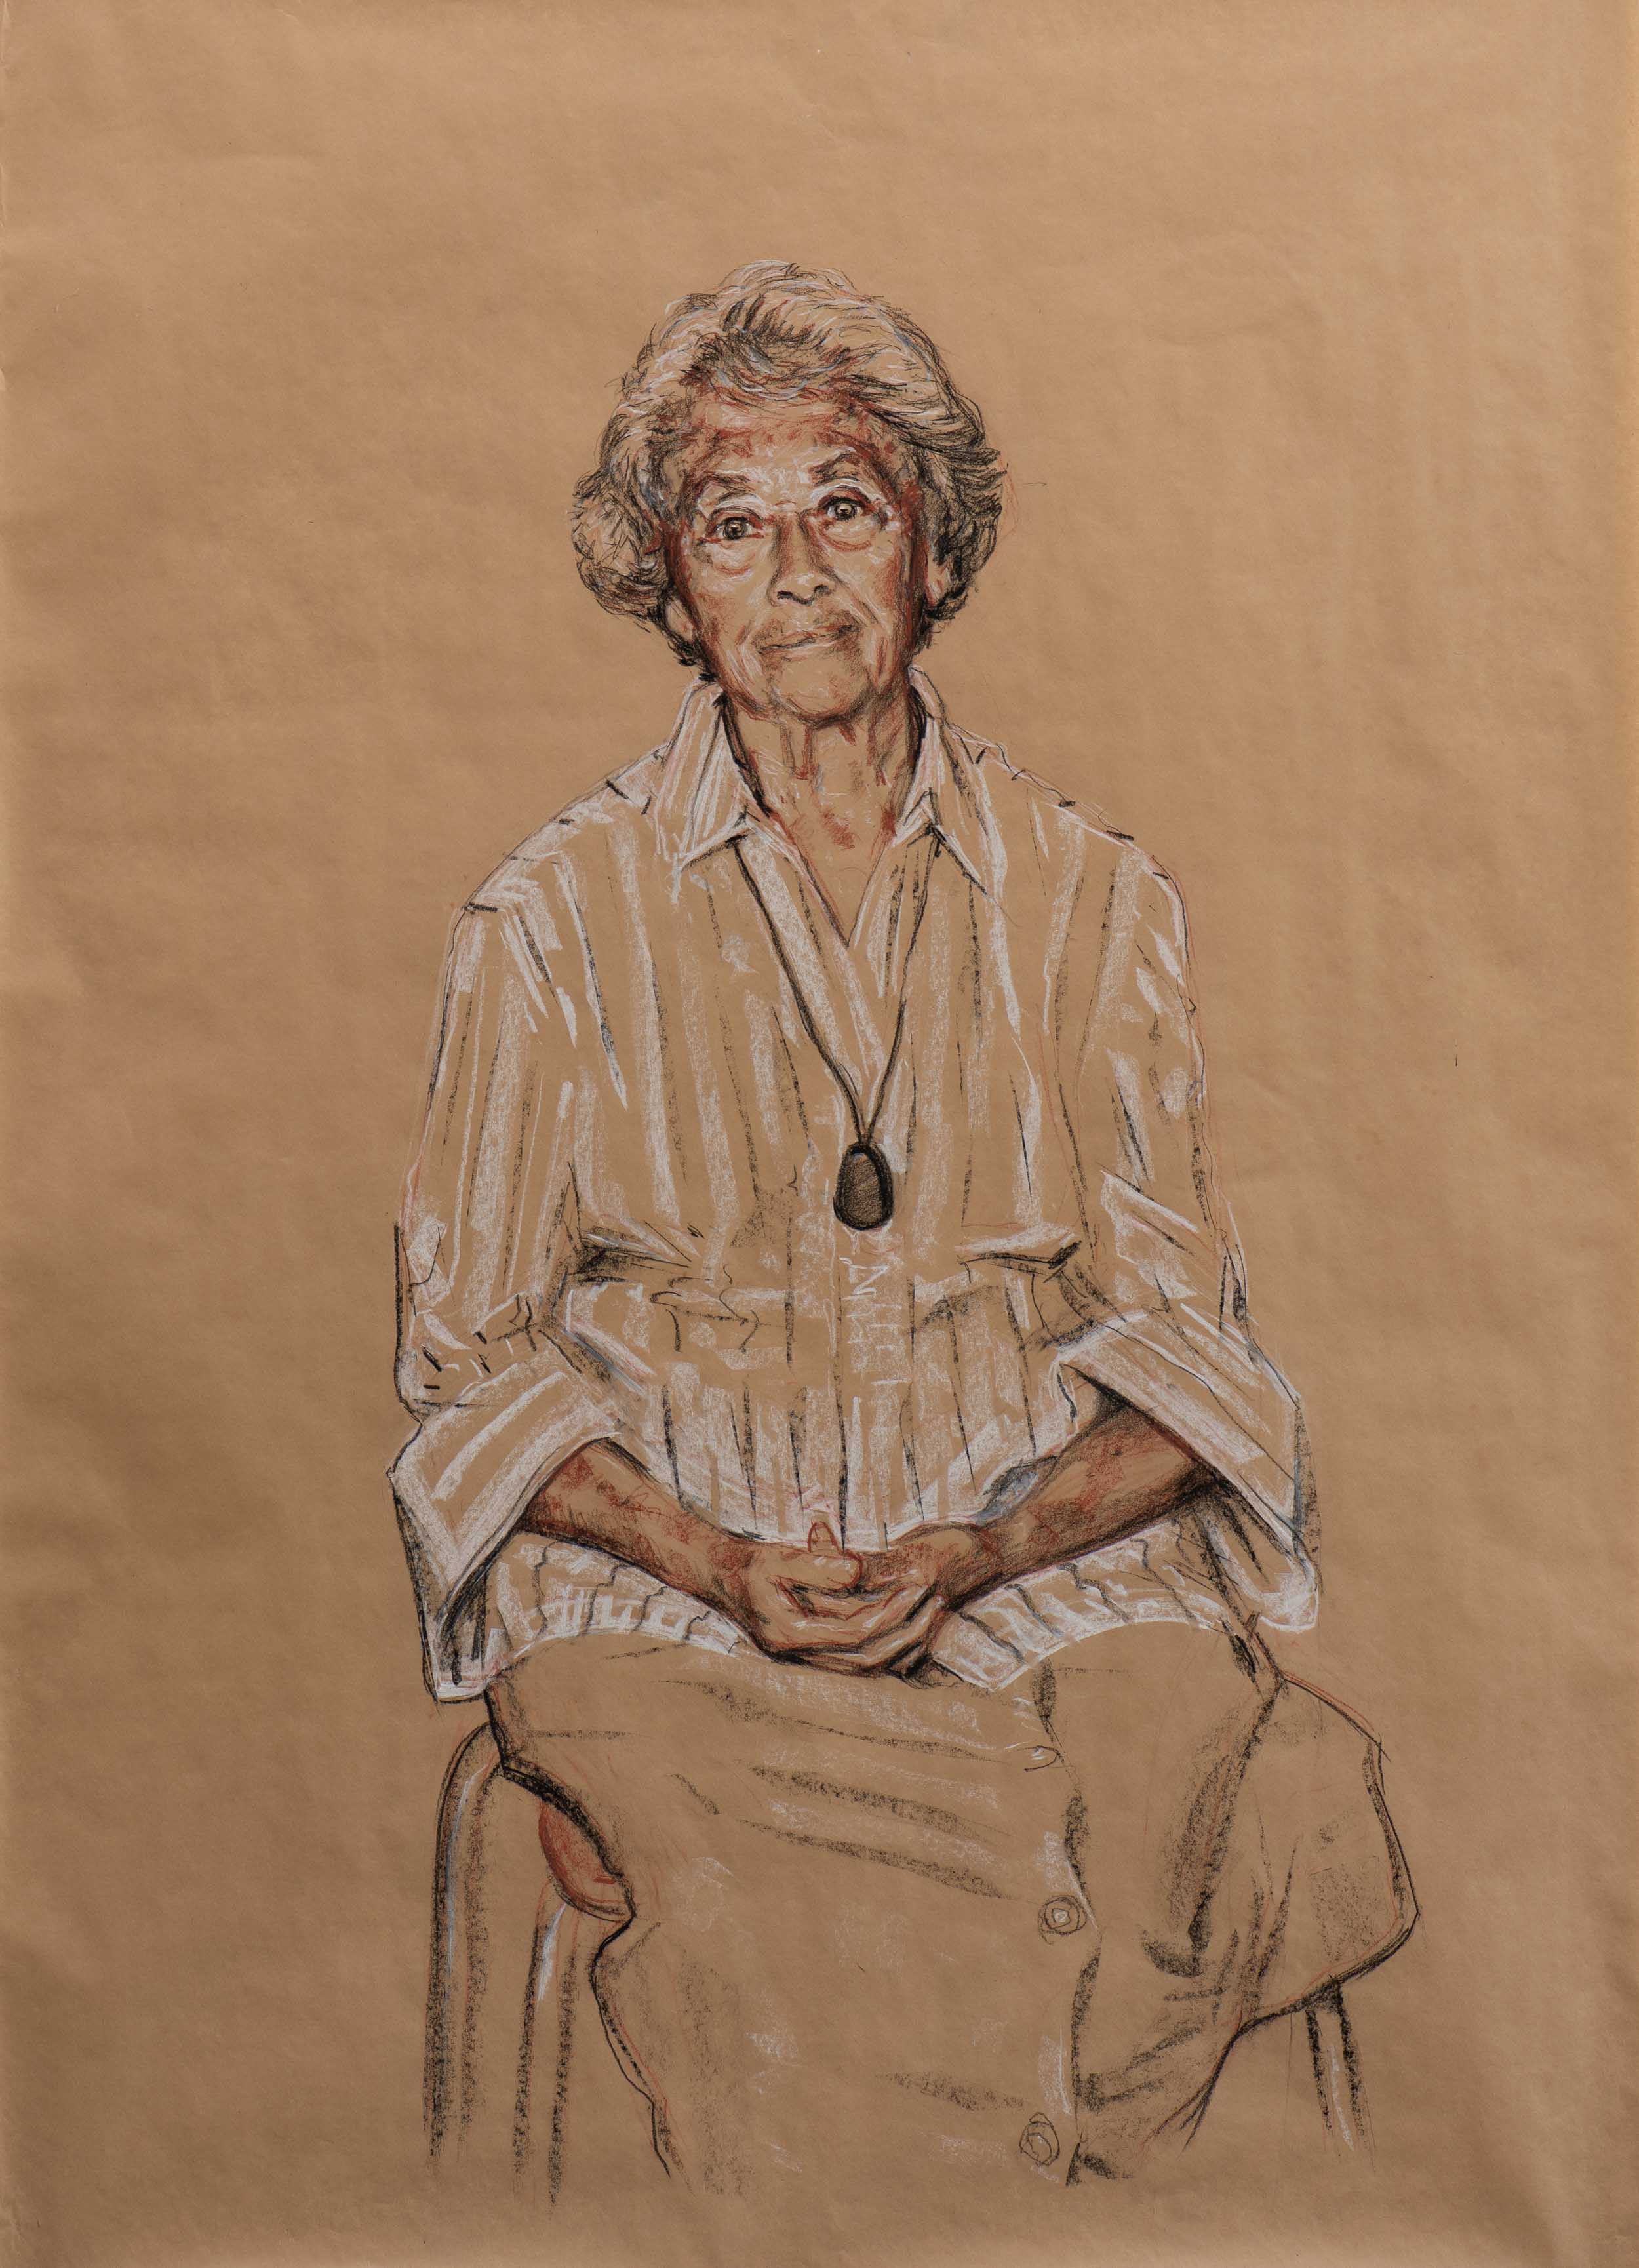 Aunty Mary King (study, 2010)